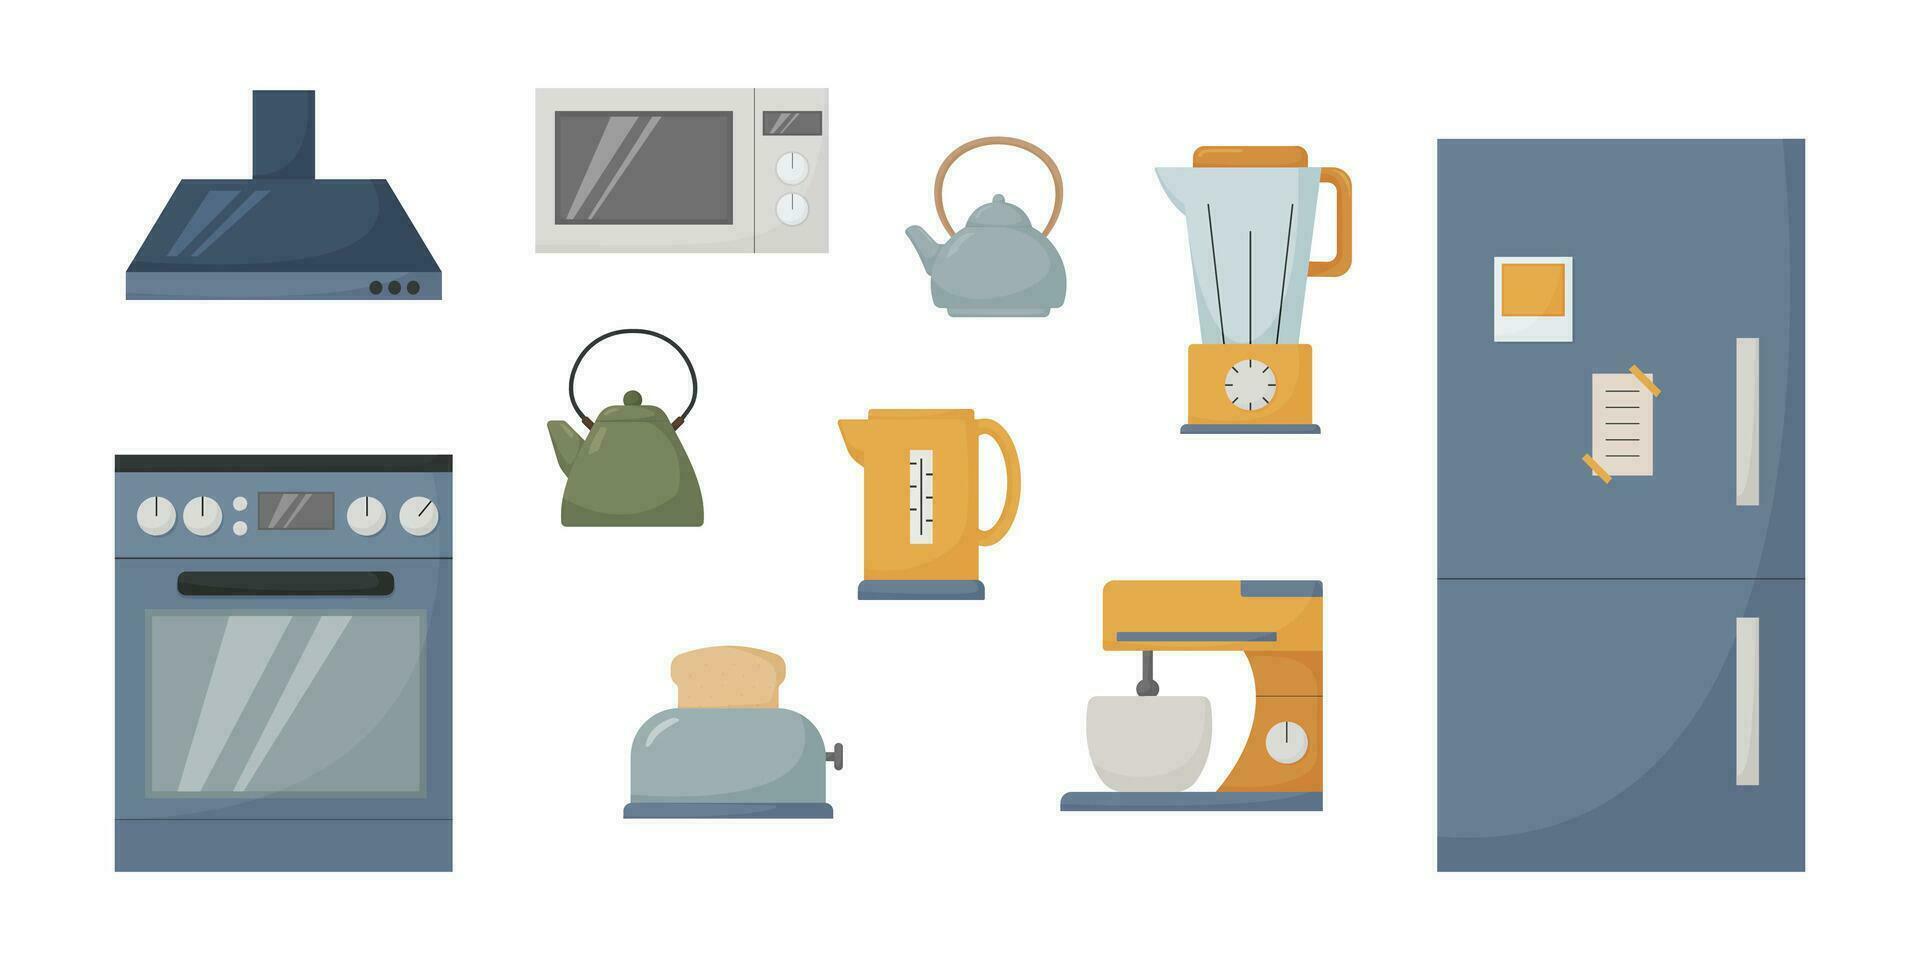 keuken elektronisch apparaten set, Koken benodigdheden, oven, fornuis, koelkast, magnetron, mixer, tosti apparaat, ketel, kap, vector illustratie